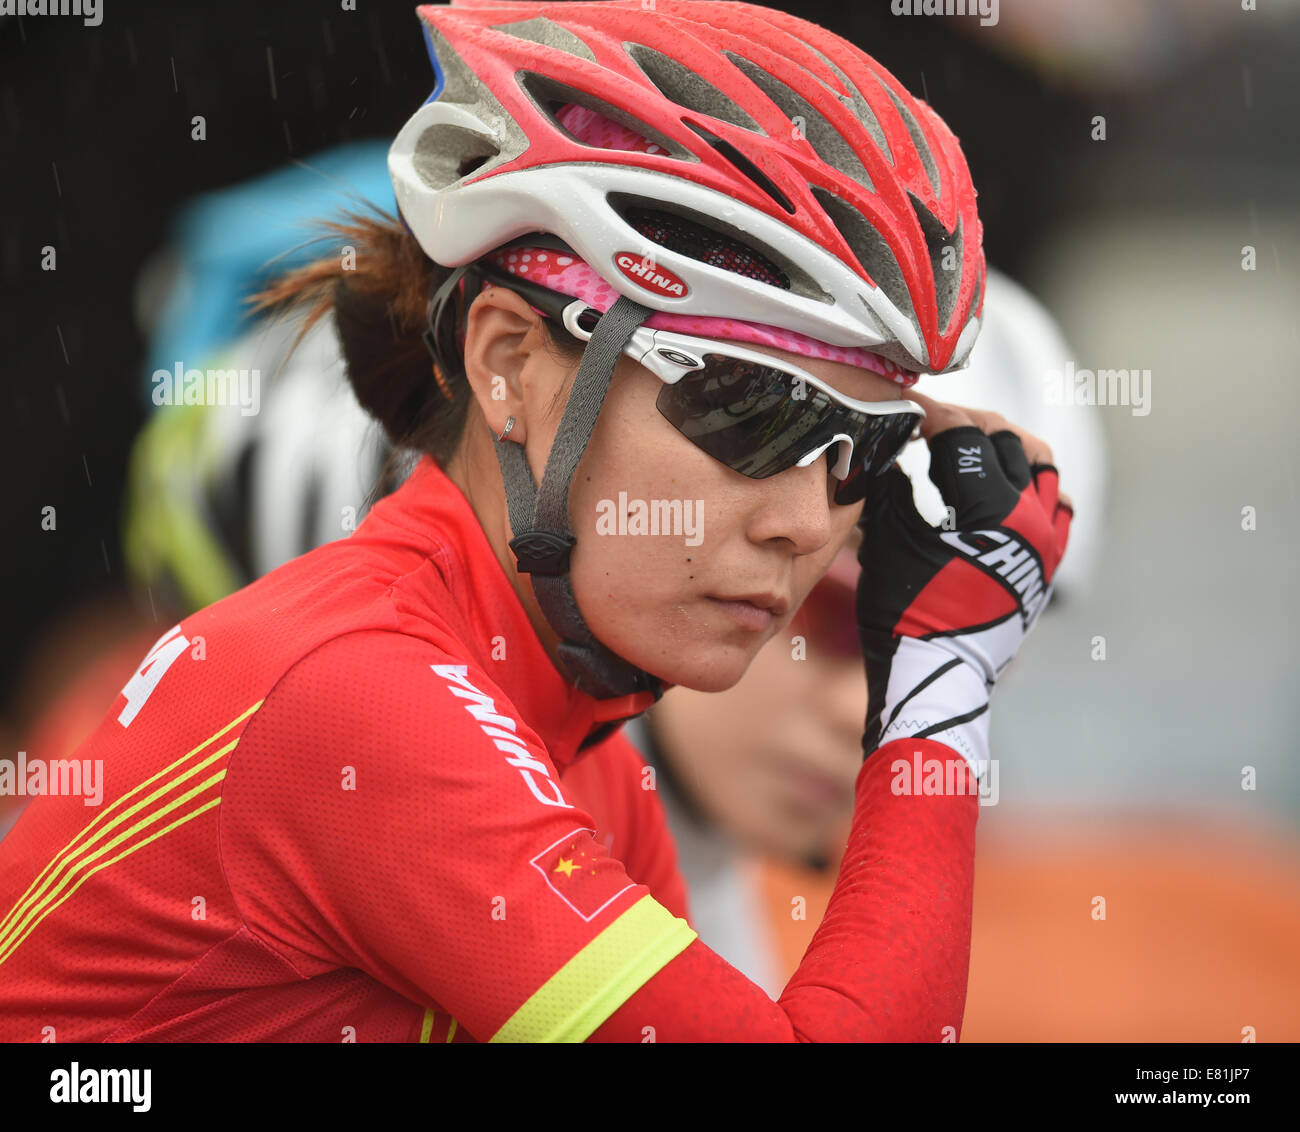 Incheon, Corée du Sud. Sep 29, 2014. Kerong Tang de la concurrence de la Chine pendant la course sur route féminine de cyclisme du concours à la 17e Jeux asiatiques à Incheon, Corée du Sud, le 29 septembre, 2014. © Xie Haining/Xinhua/Alamy Live News Banque D'Images